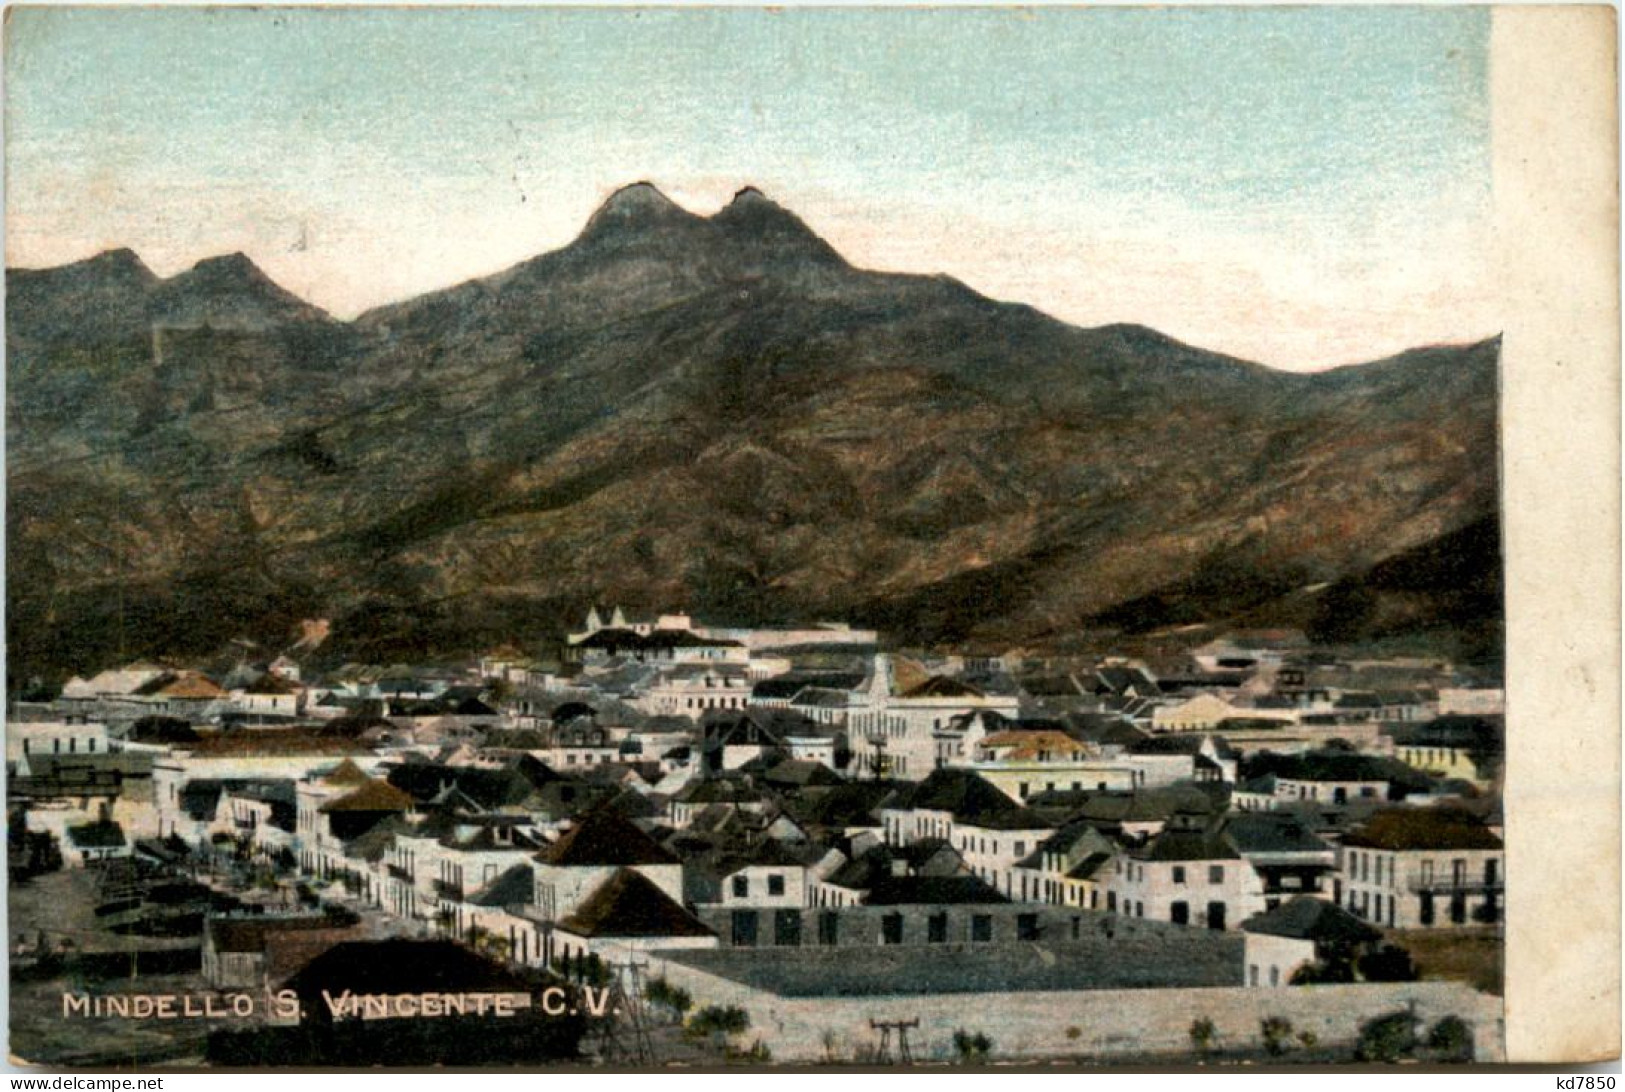 Mindello S. Vincente - Cap Verde